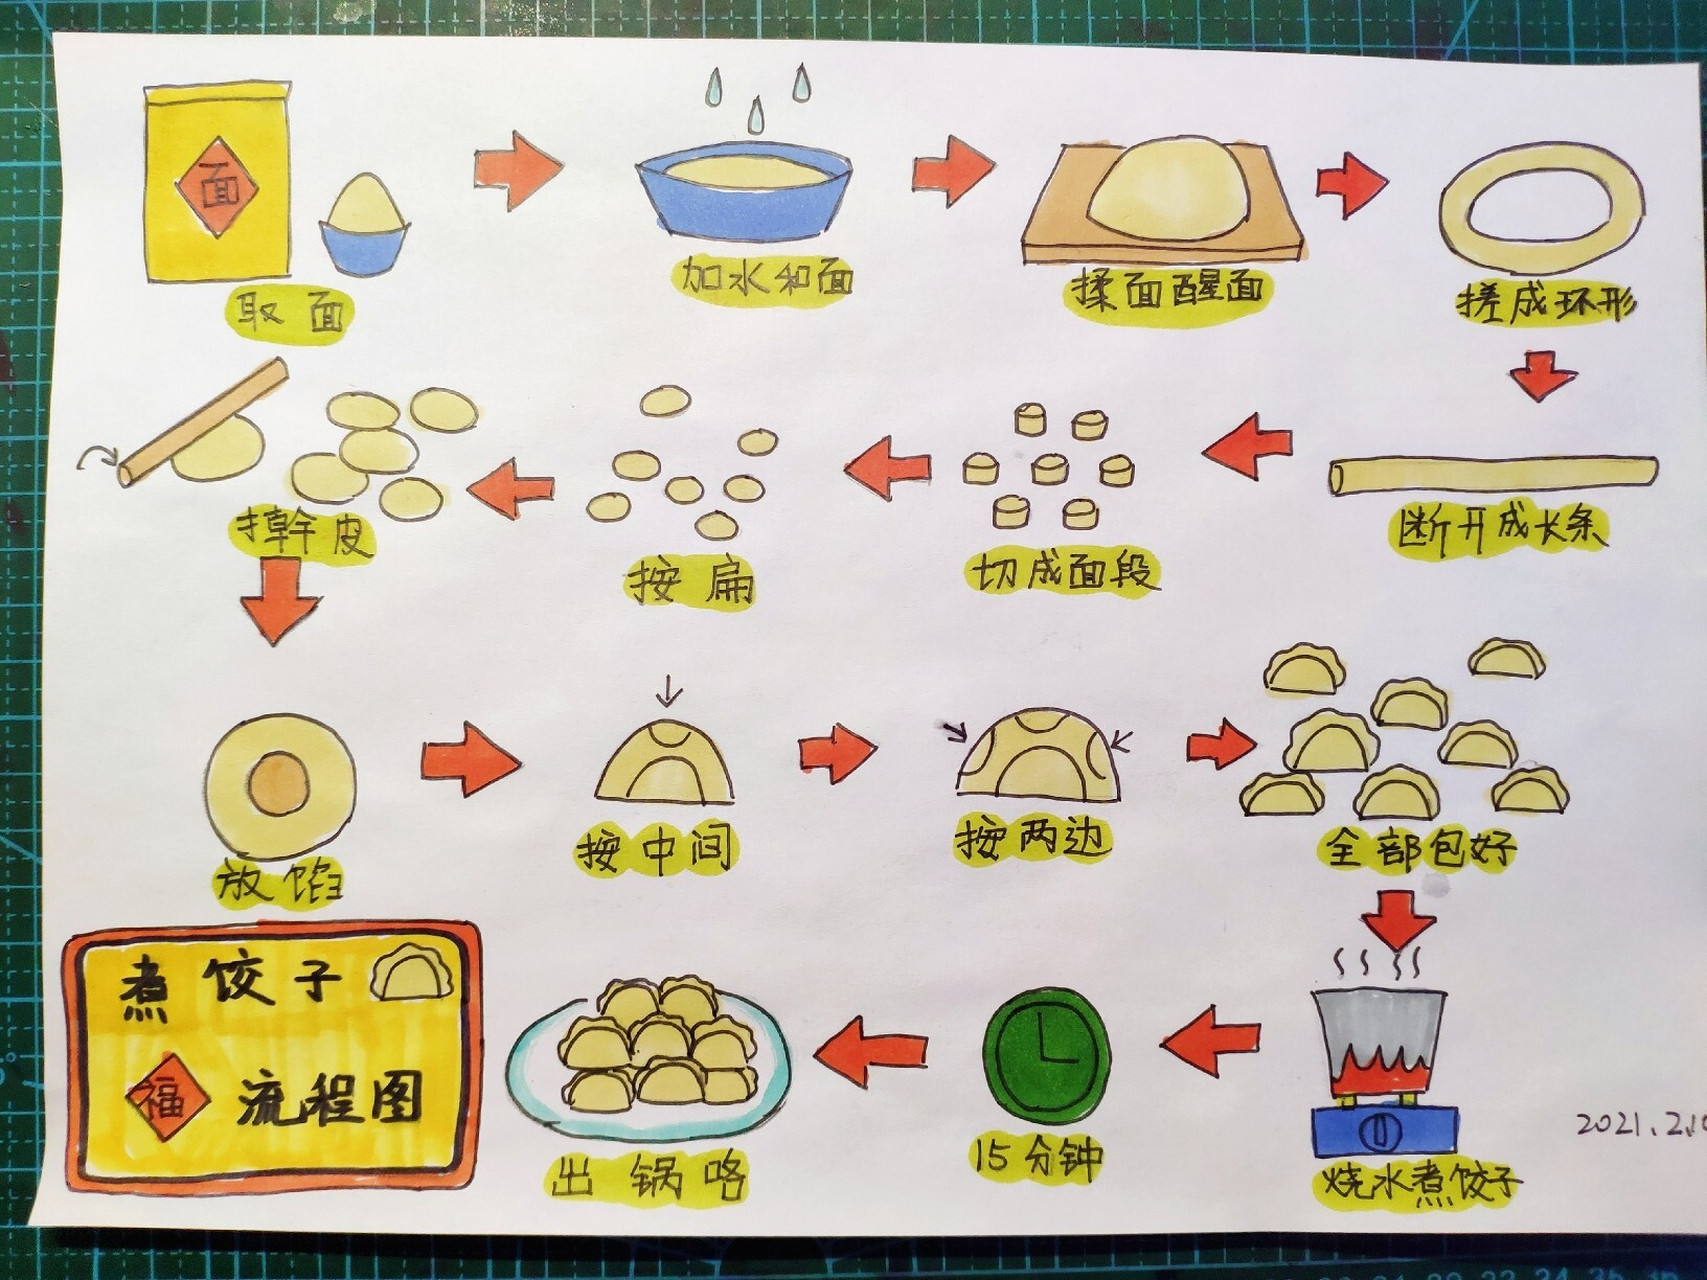 花式包饺子的方法图解图片